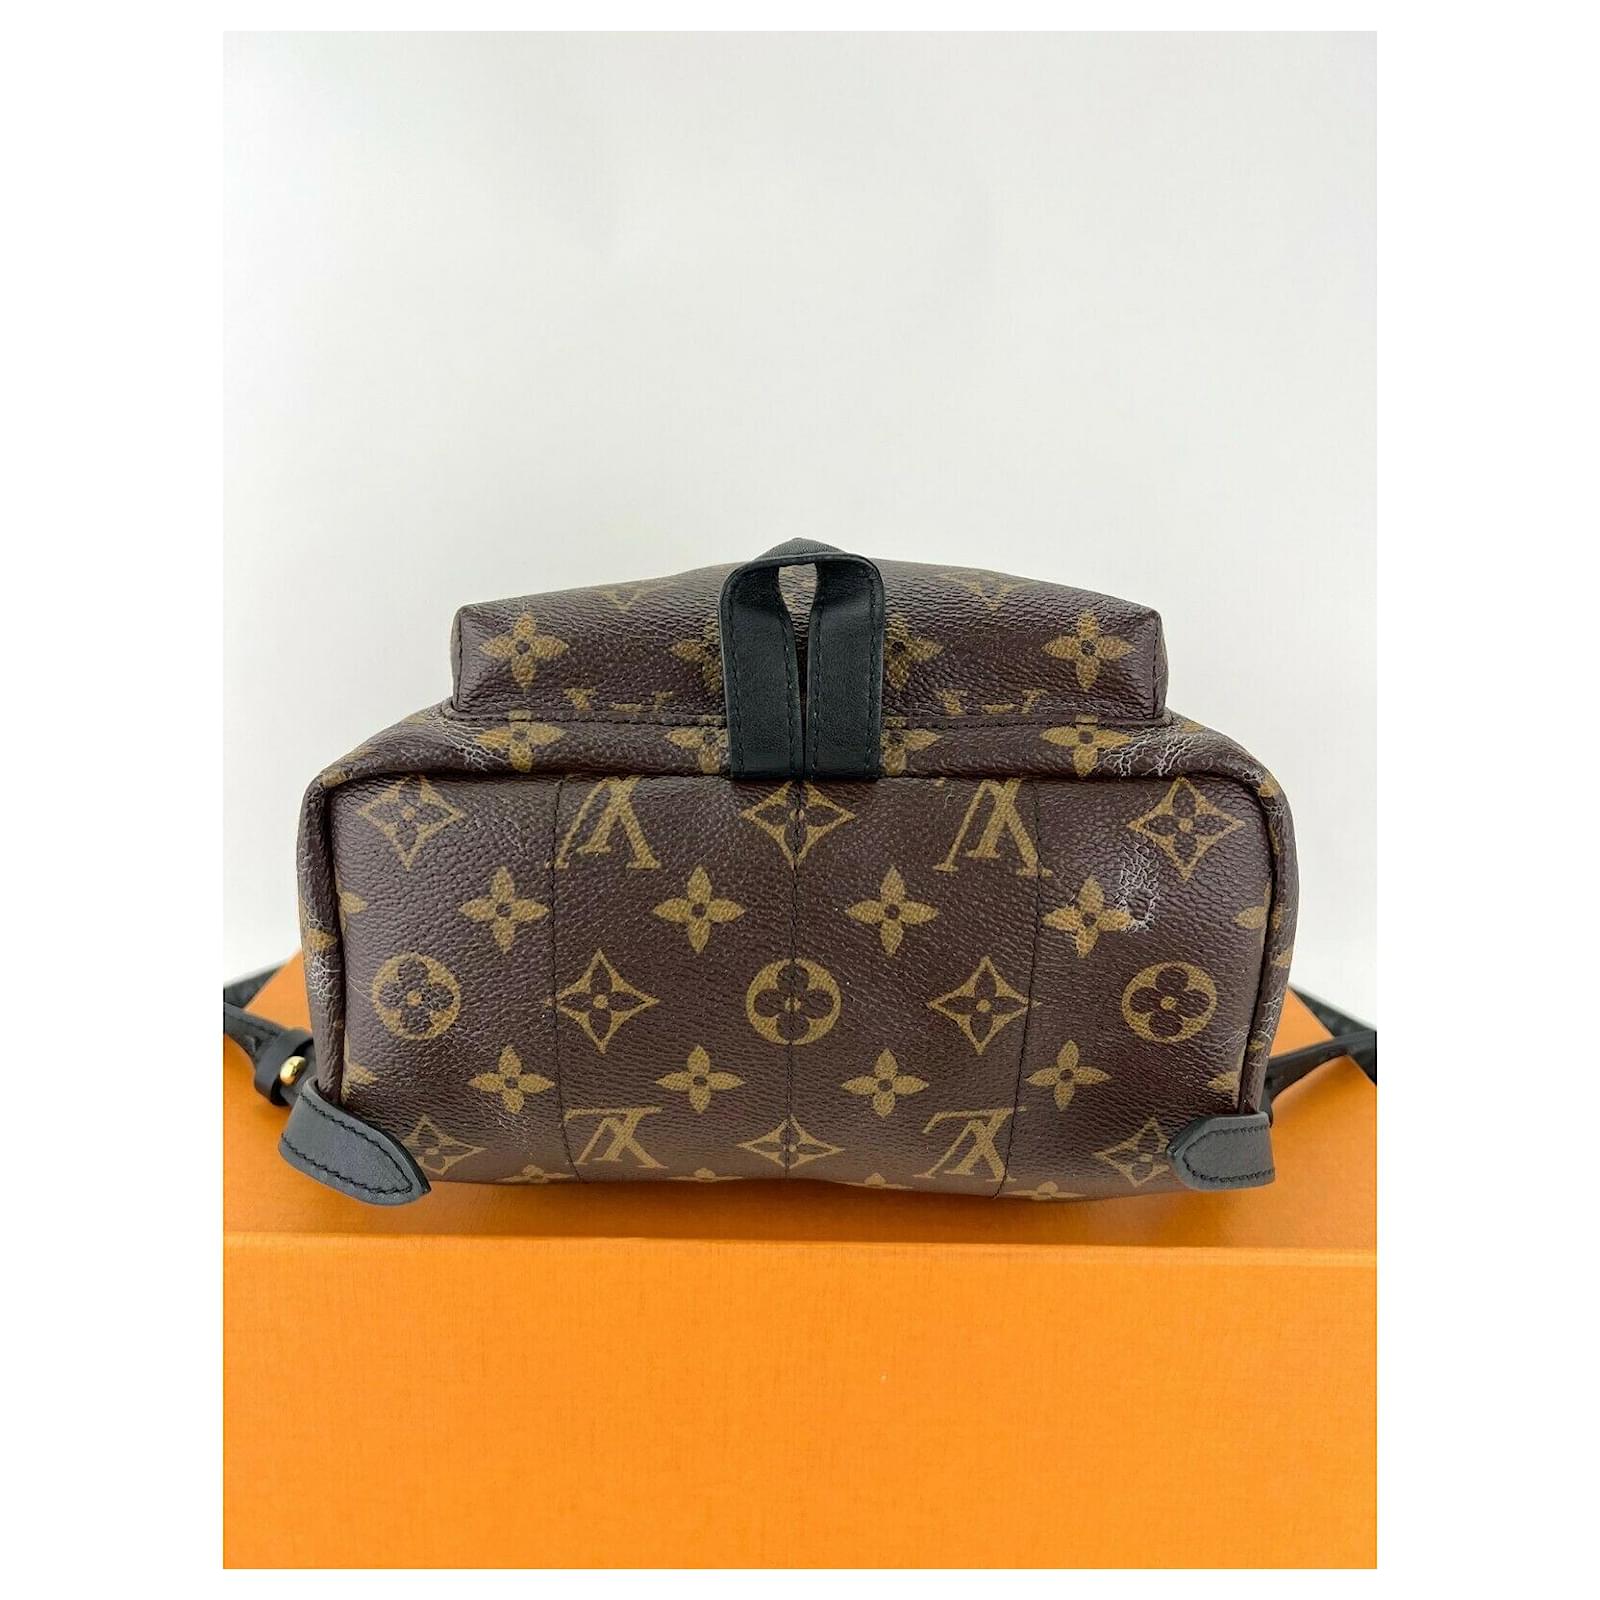 Unboxing The Louis Vuitton e Sling Bag